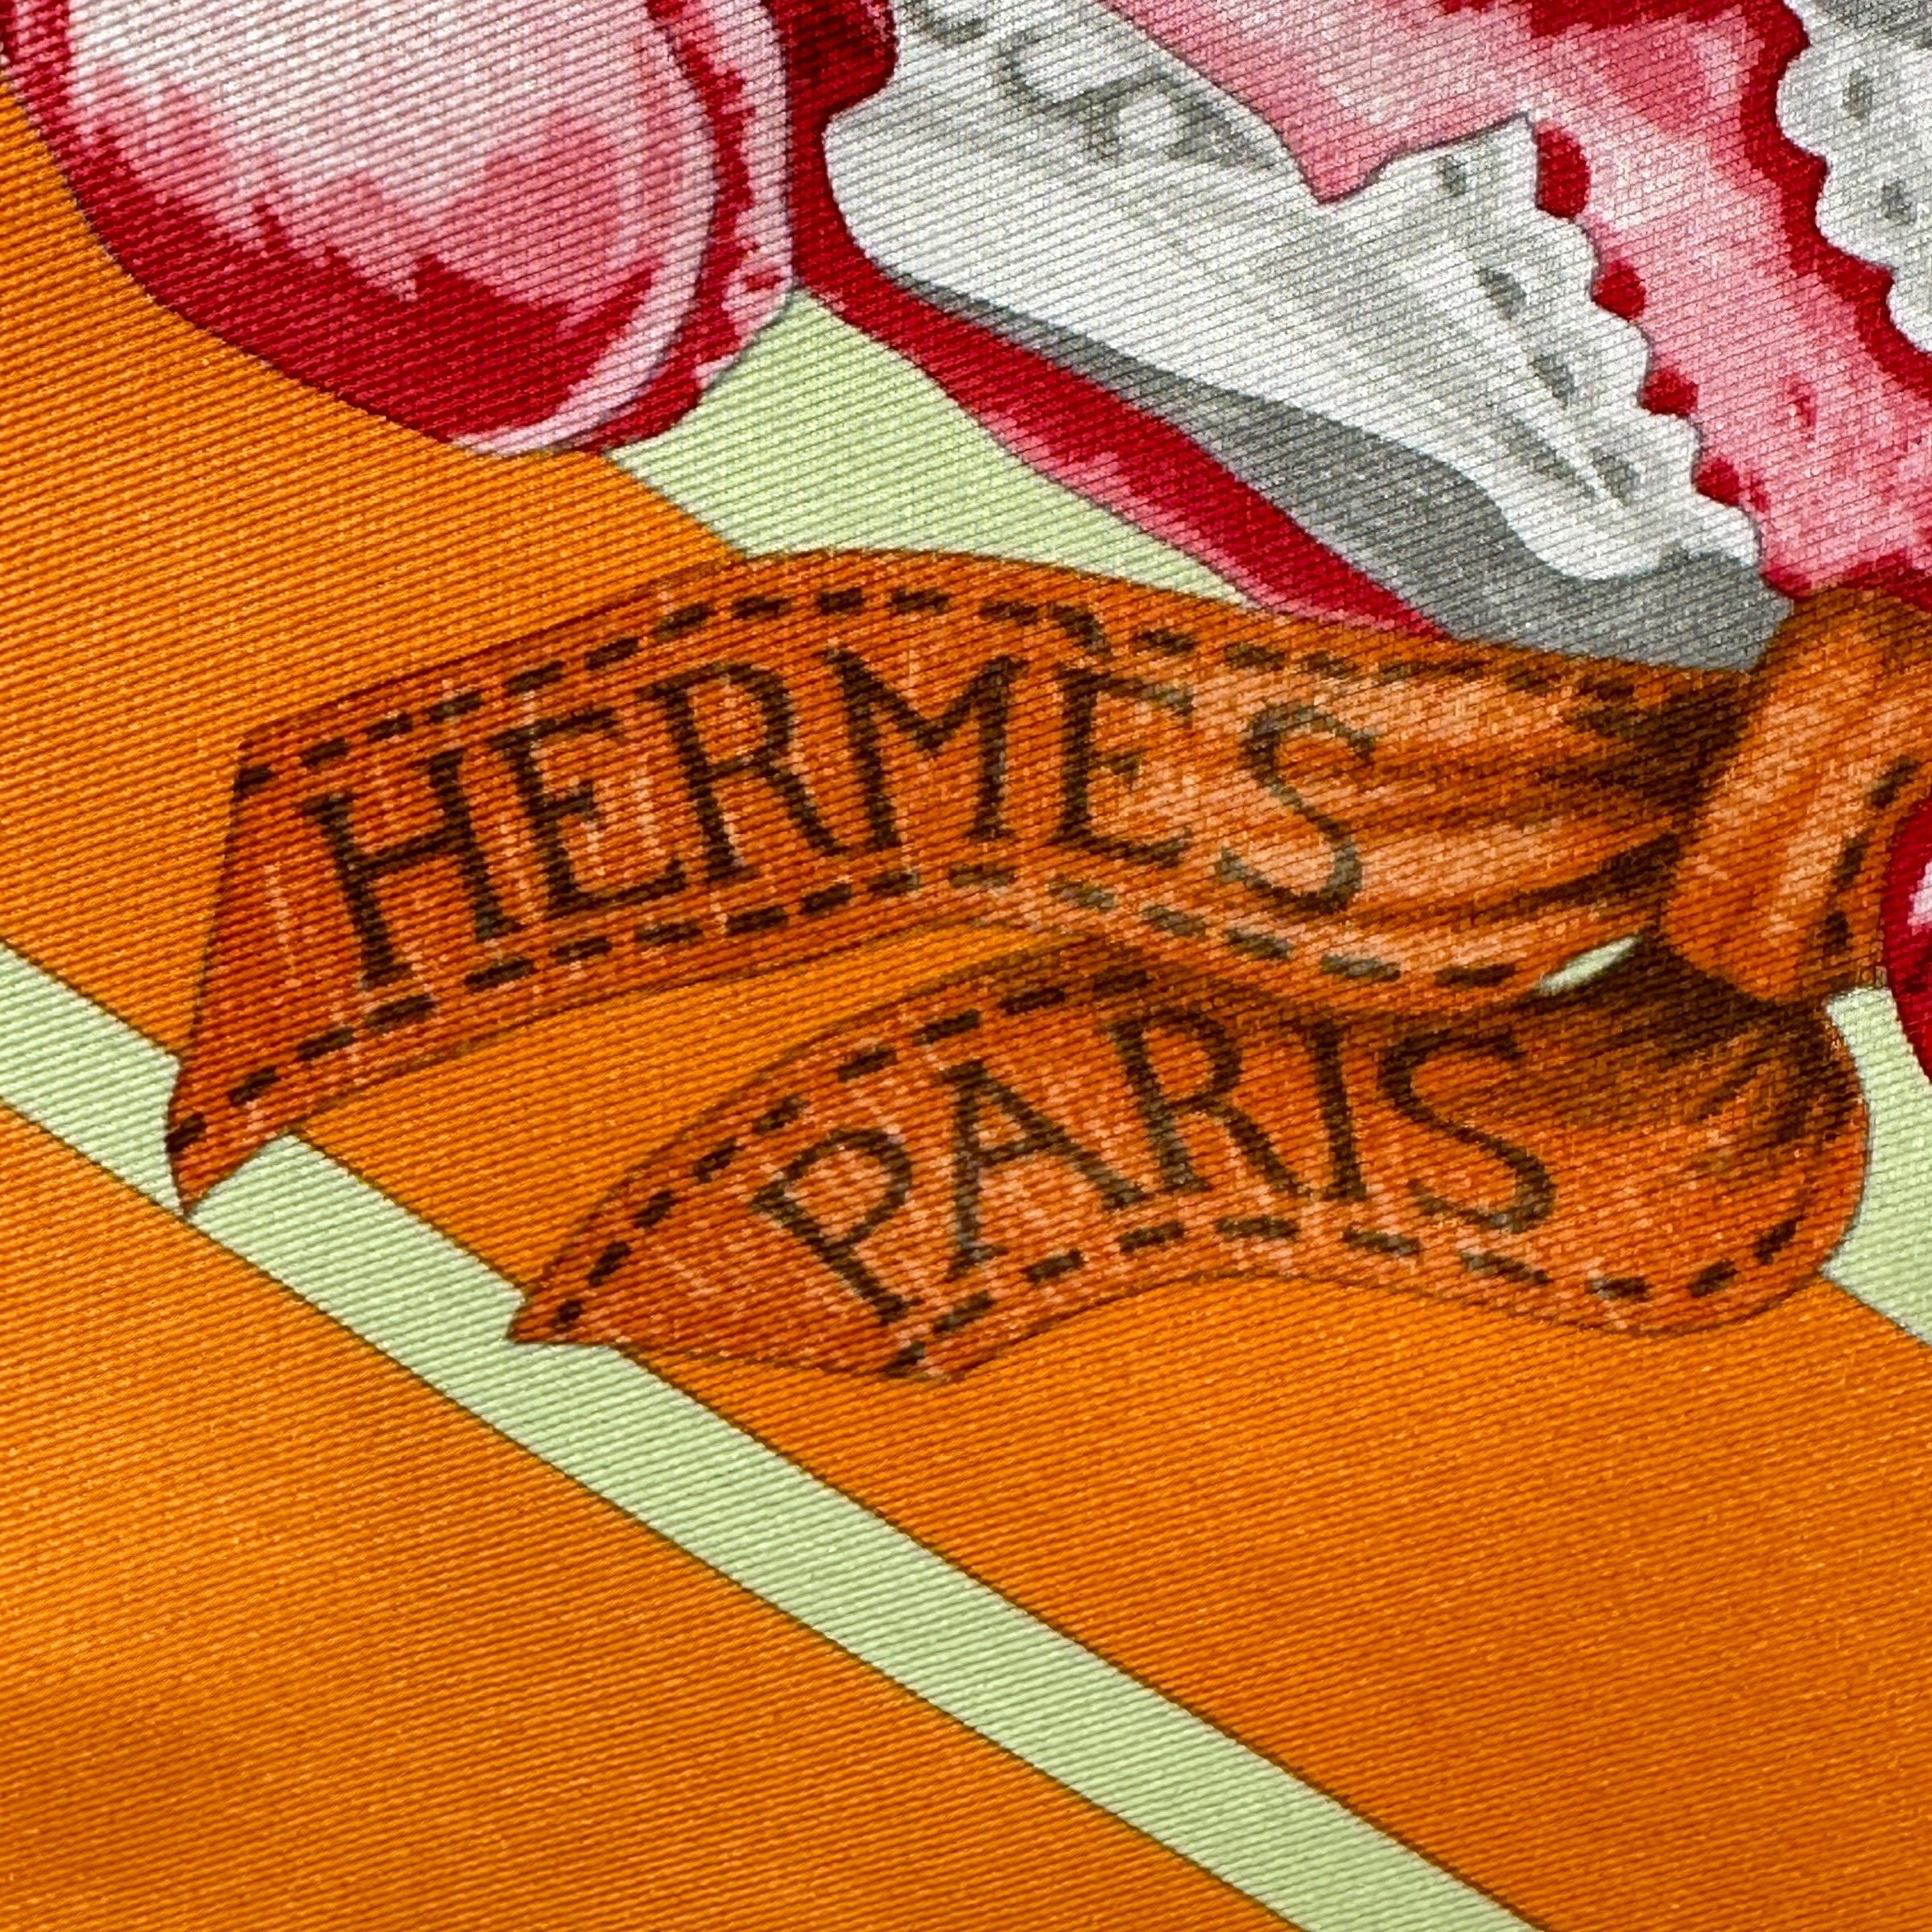 signature-hermes-paris